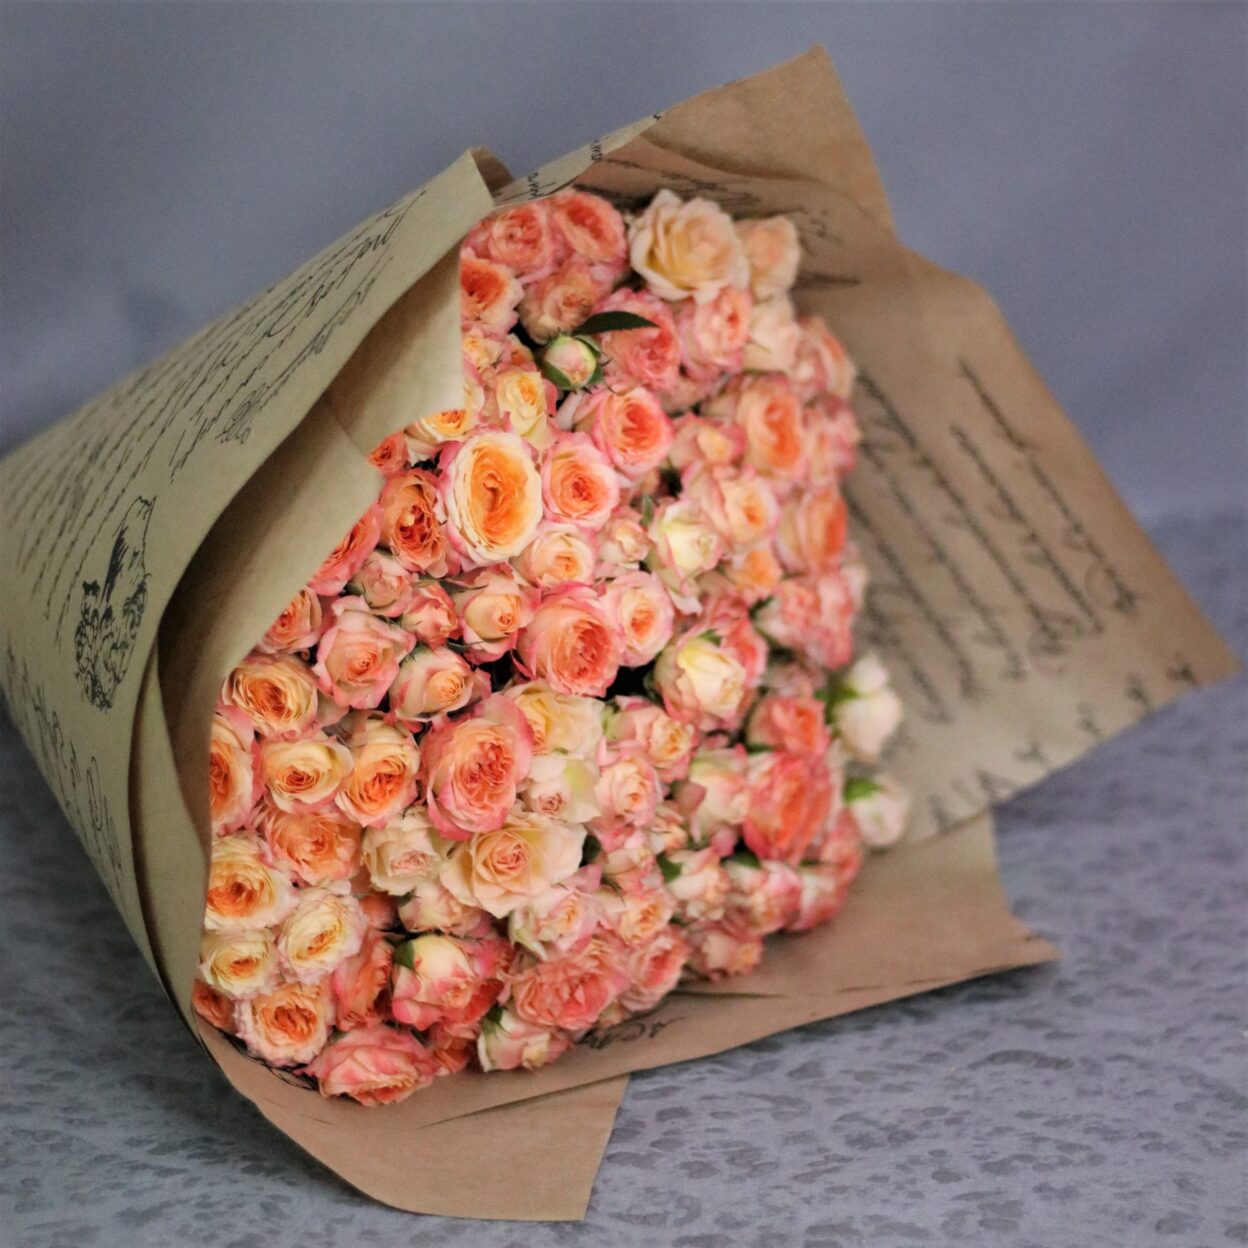 Монобукет из бежево-оранжевых кустовых роз